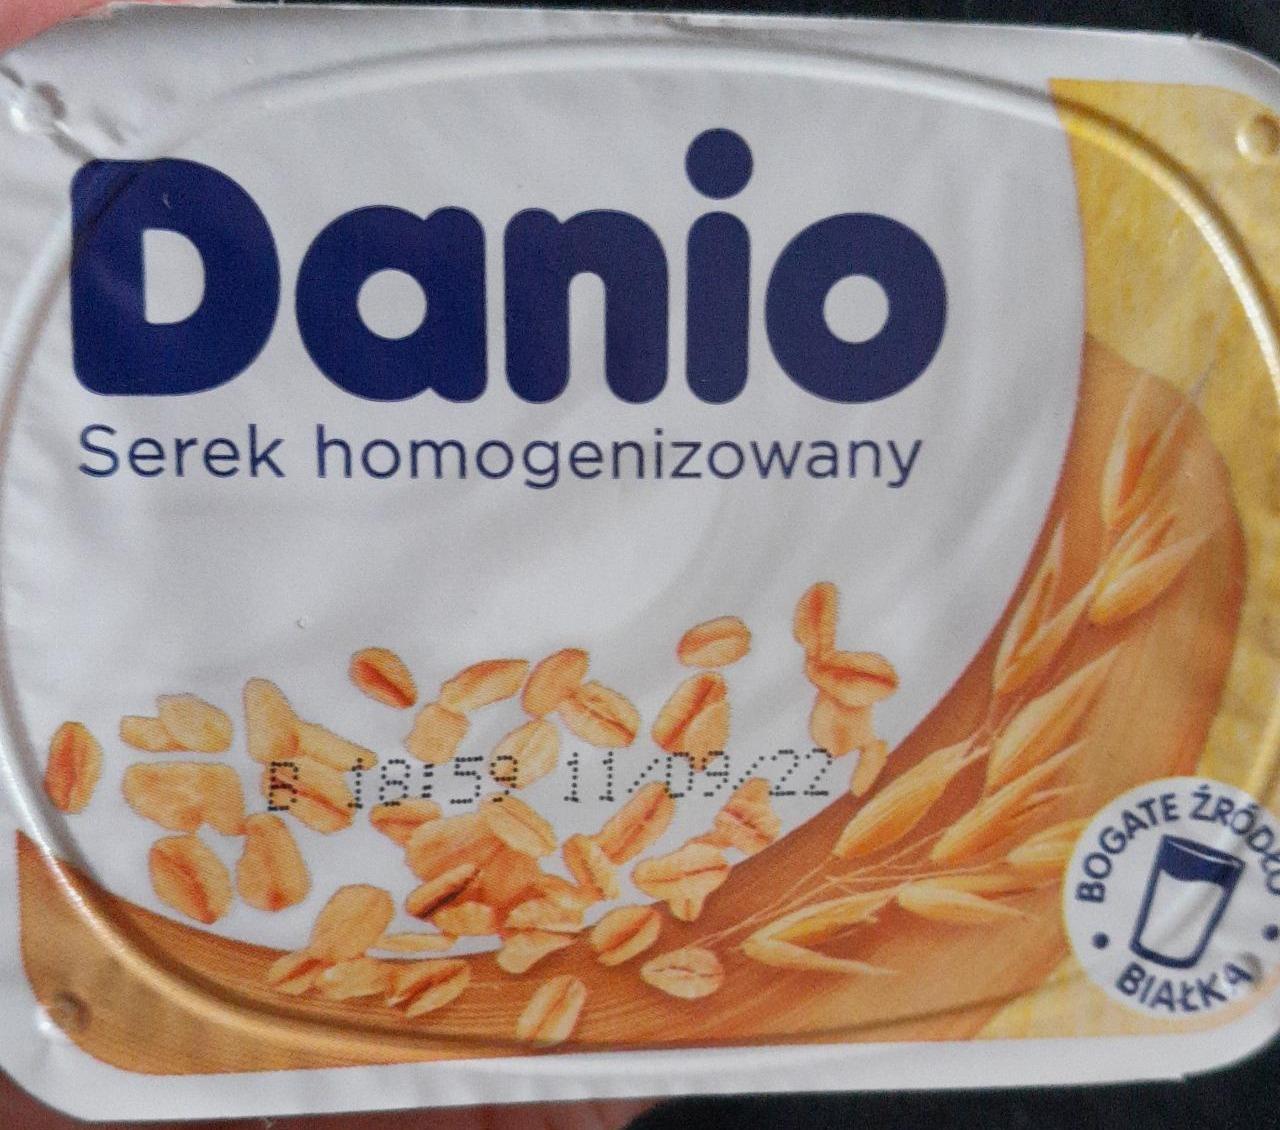 Zdjęcia - Danio Serek o smaku waniliowym z płatkami owsianymi 130 g